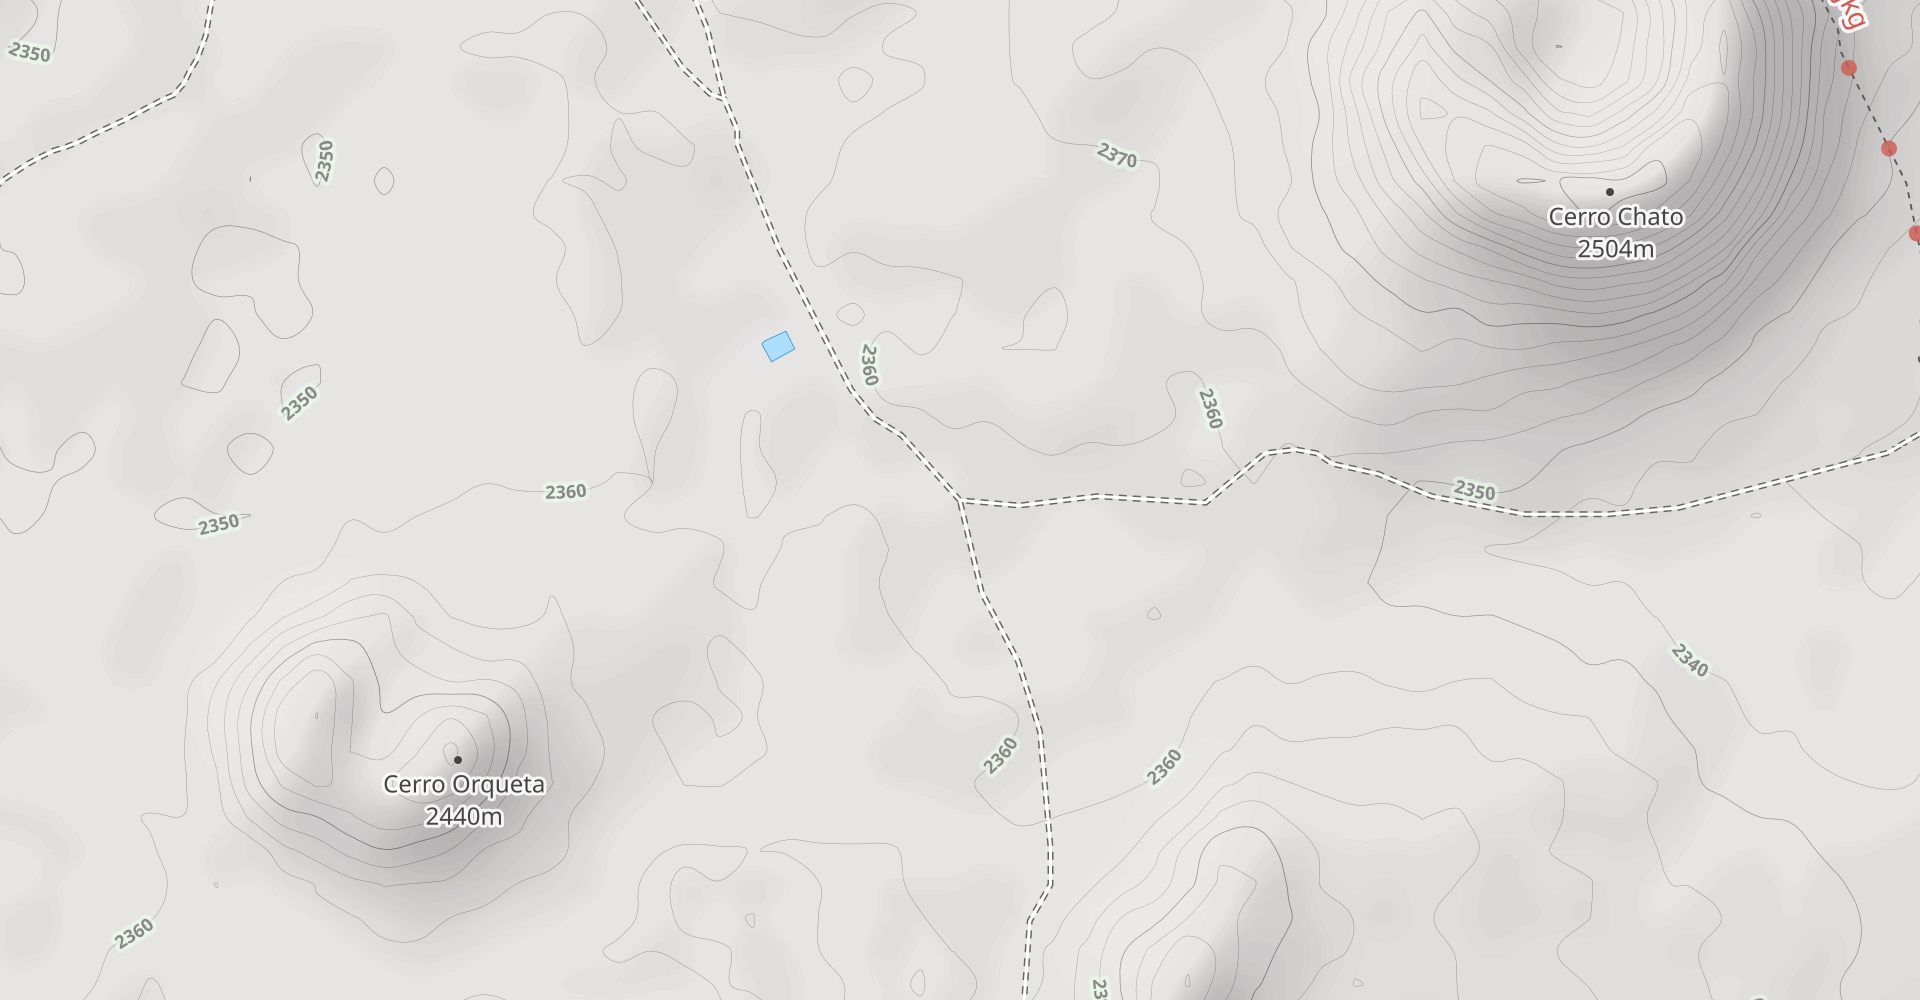 Cerro Lobo Via Continental Divide Trail